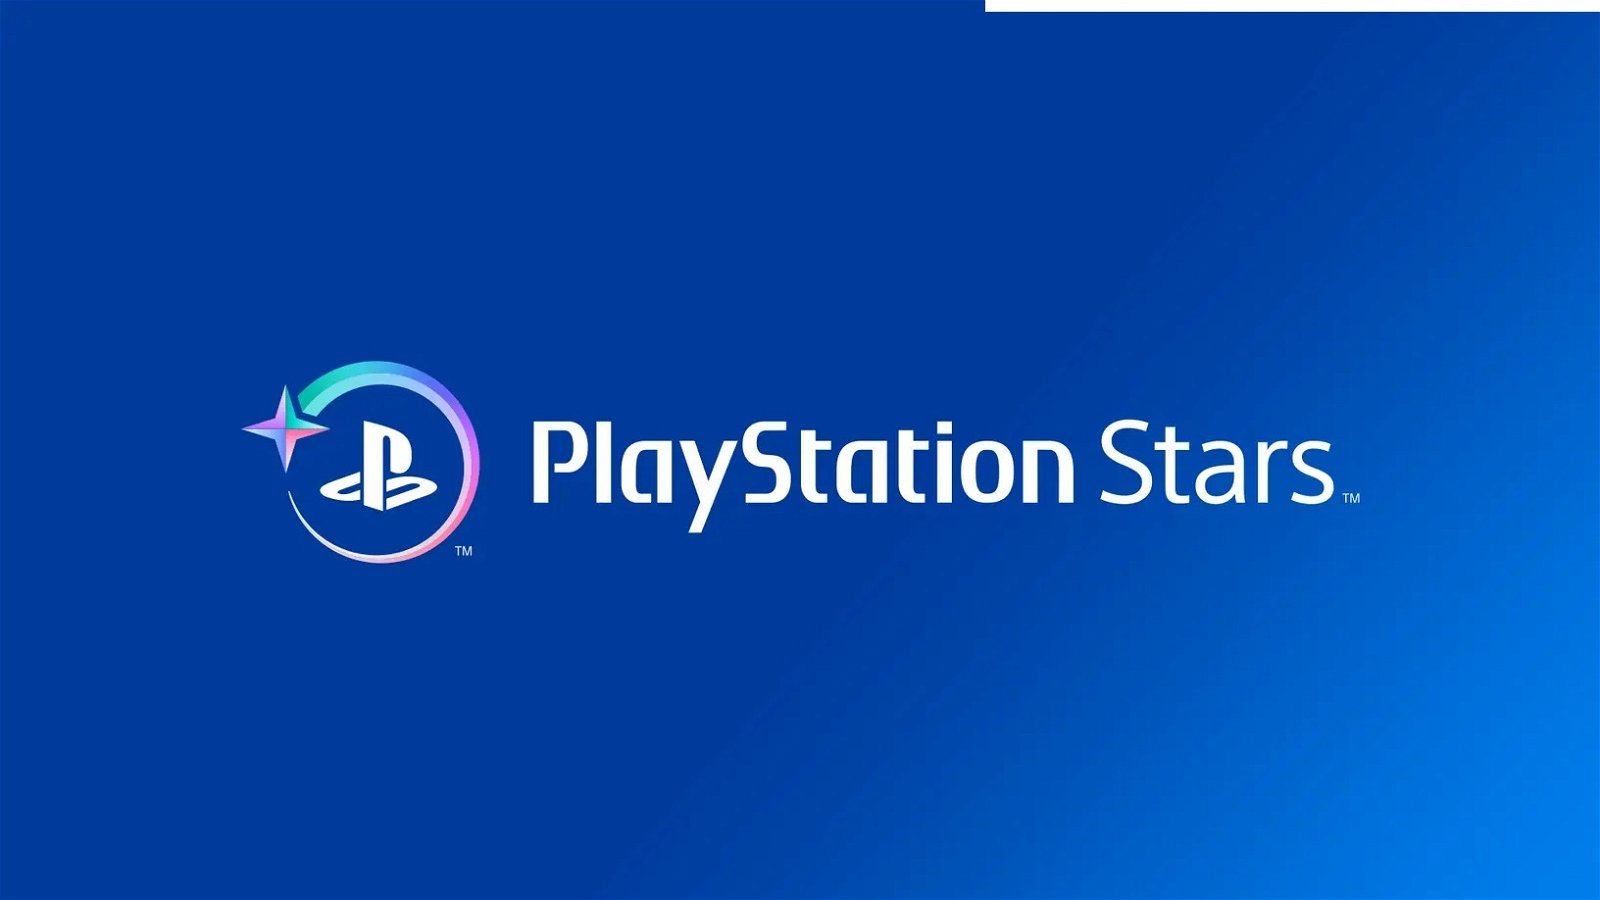 PlayStation Stars incluye una ventaja que está provocando el enfado de los jugadores